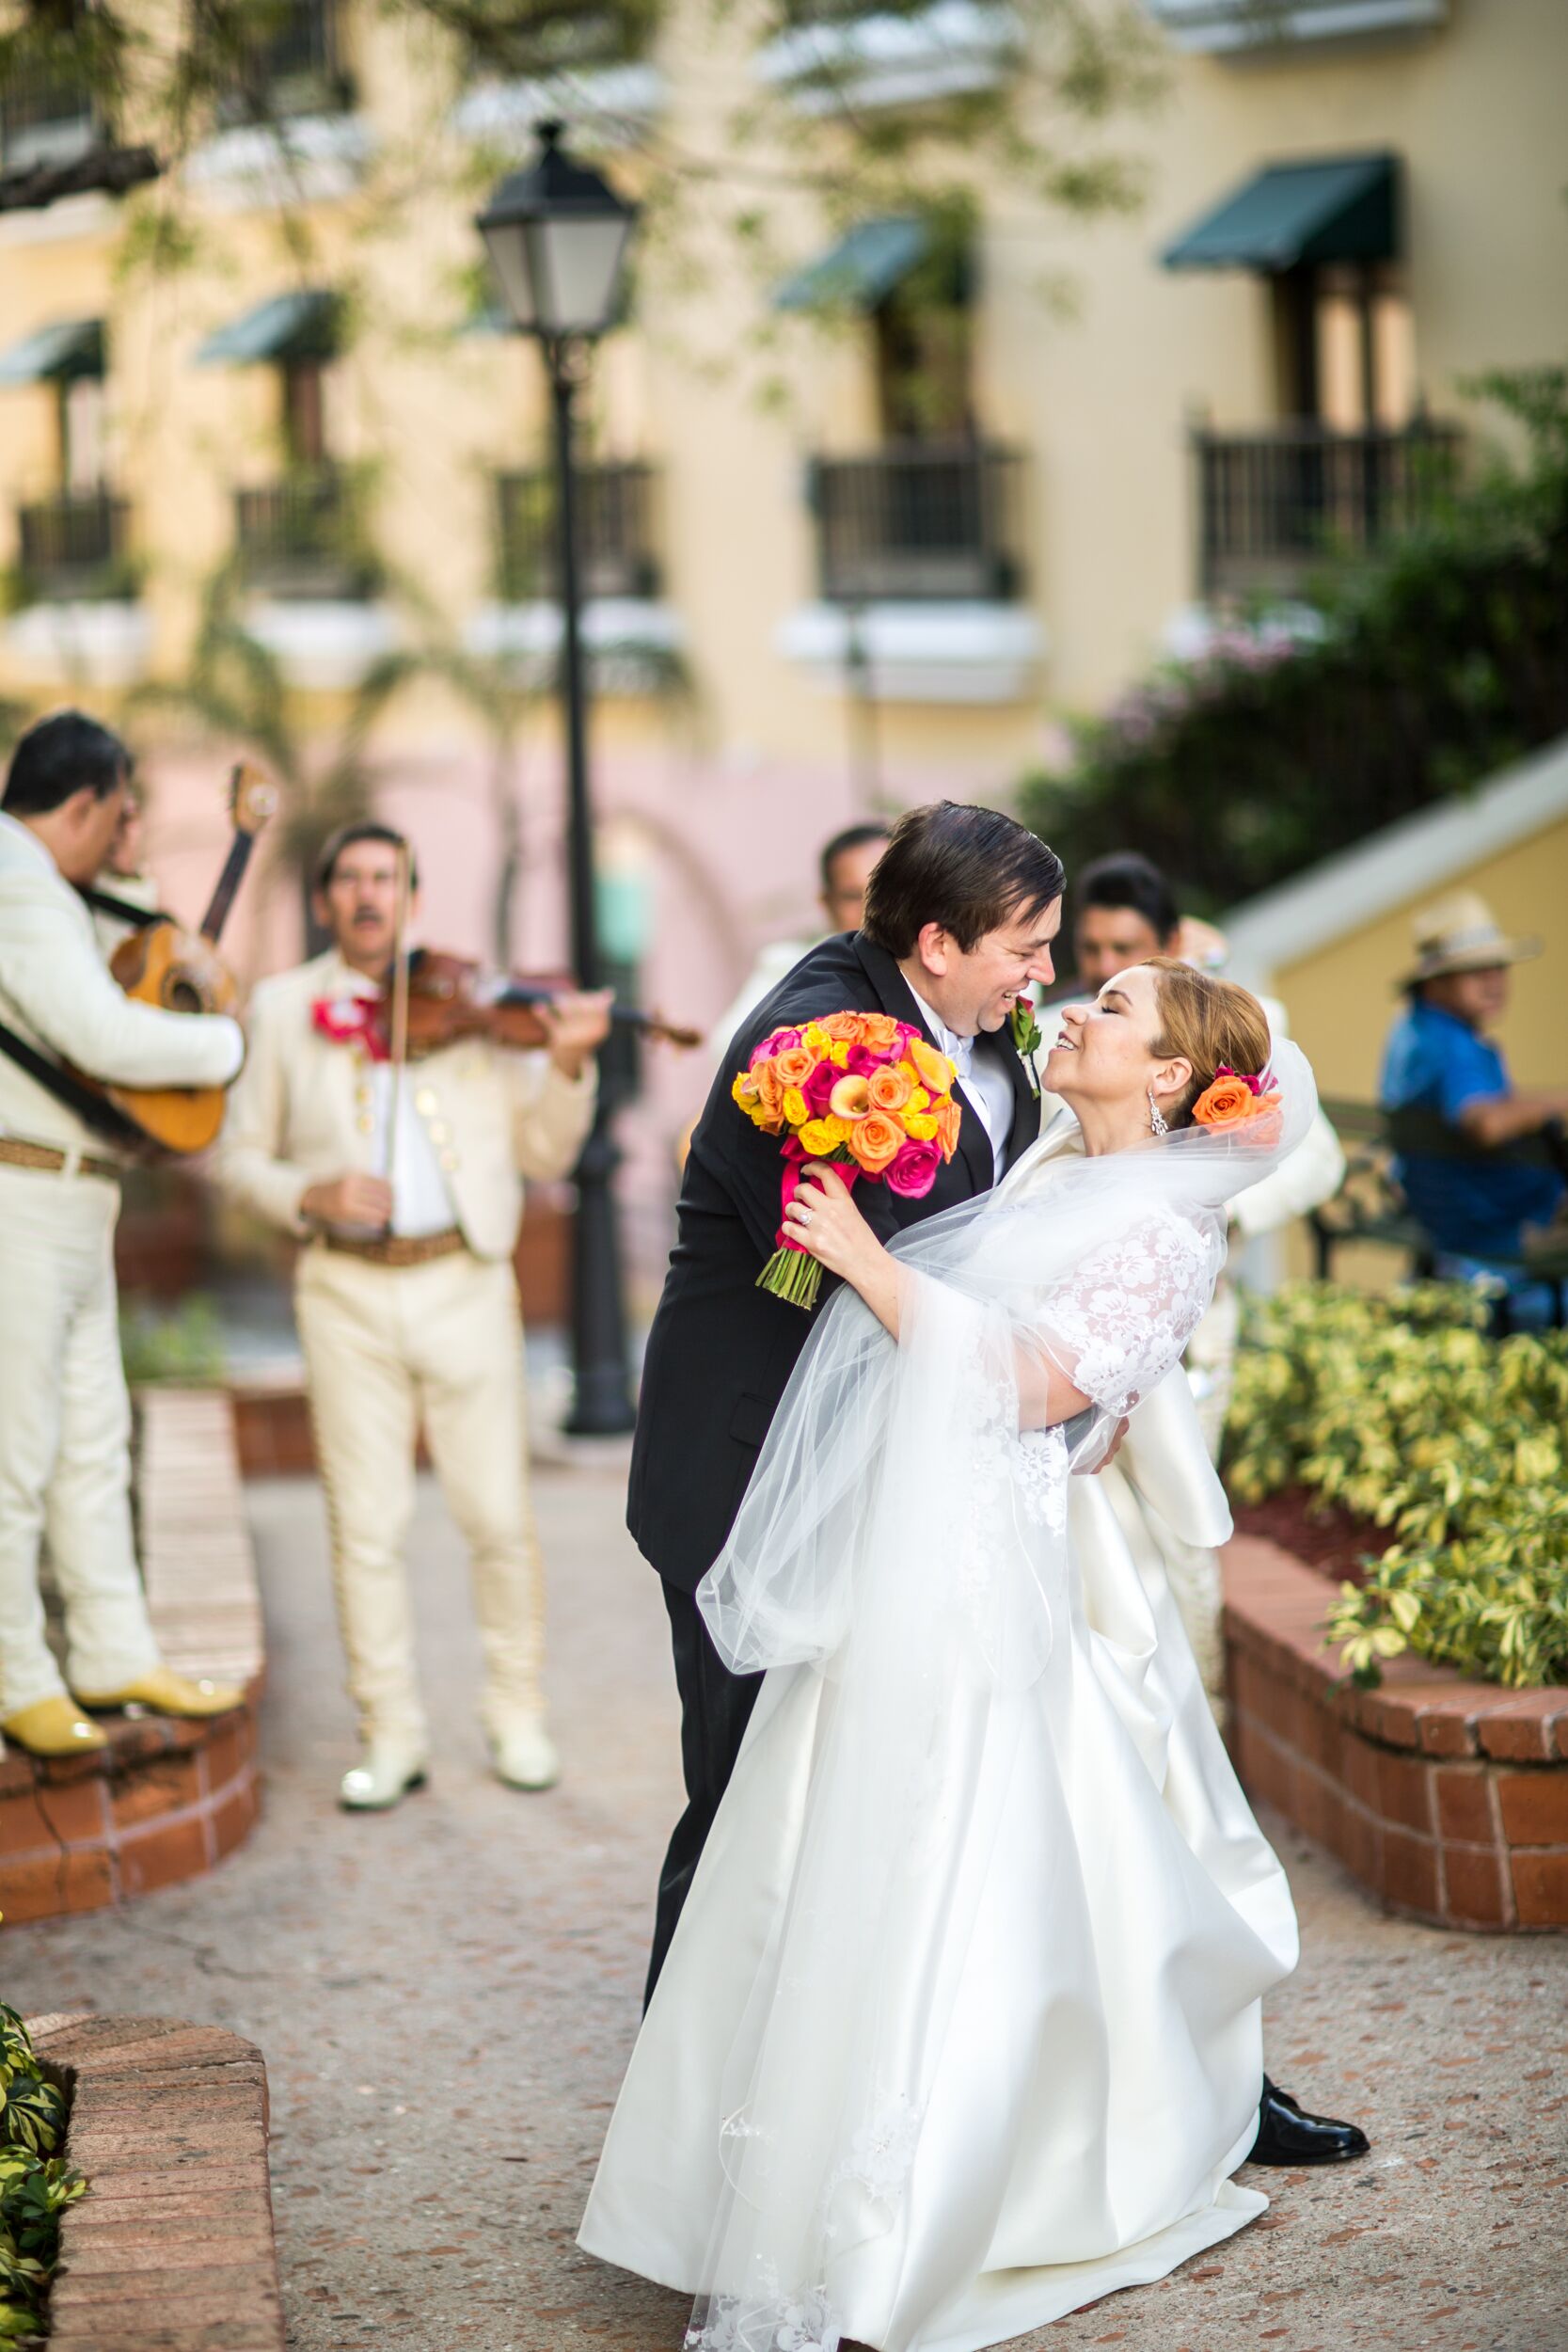 A Traditional, Destination Wedding at Hotel El Convento in Old San Juan